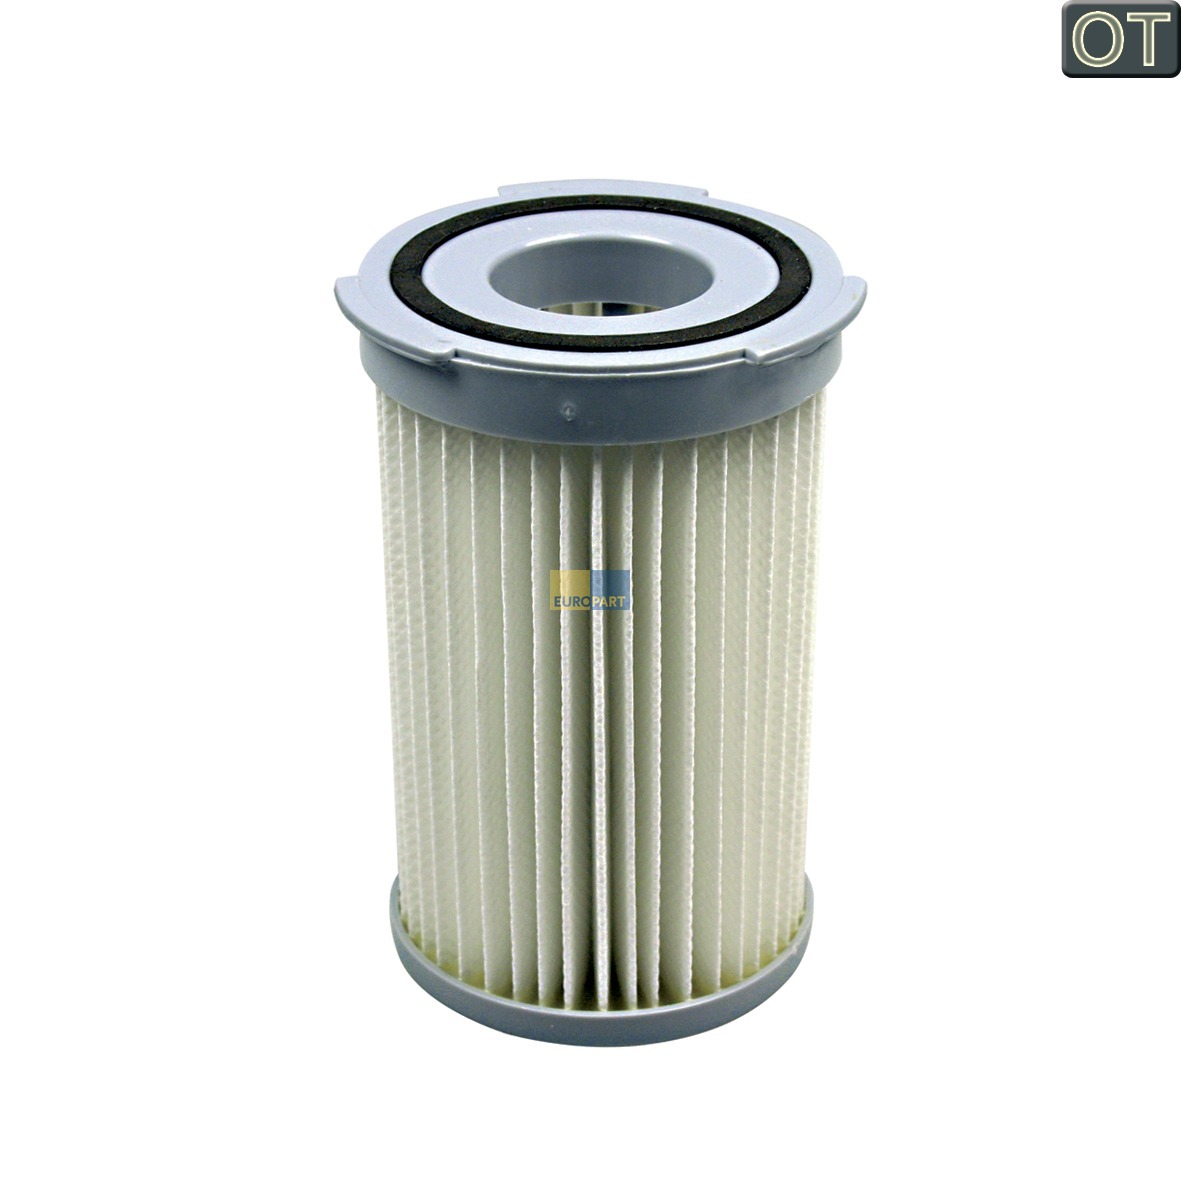 Filterzylinder PROGRESS 900196605-1 Lamellenfilter für Staubsauger (KD-9001966051)